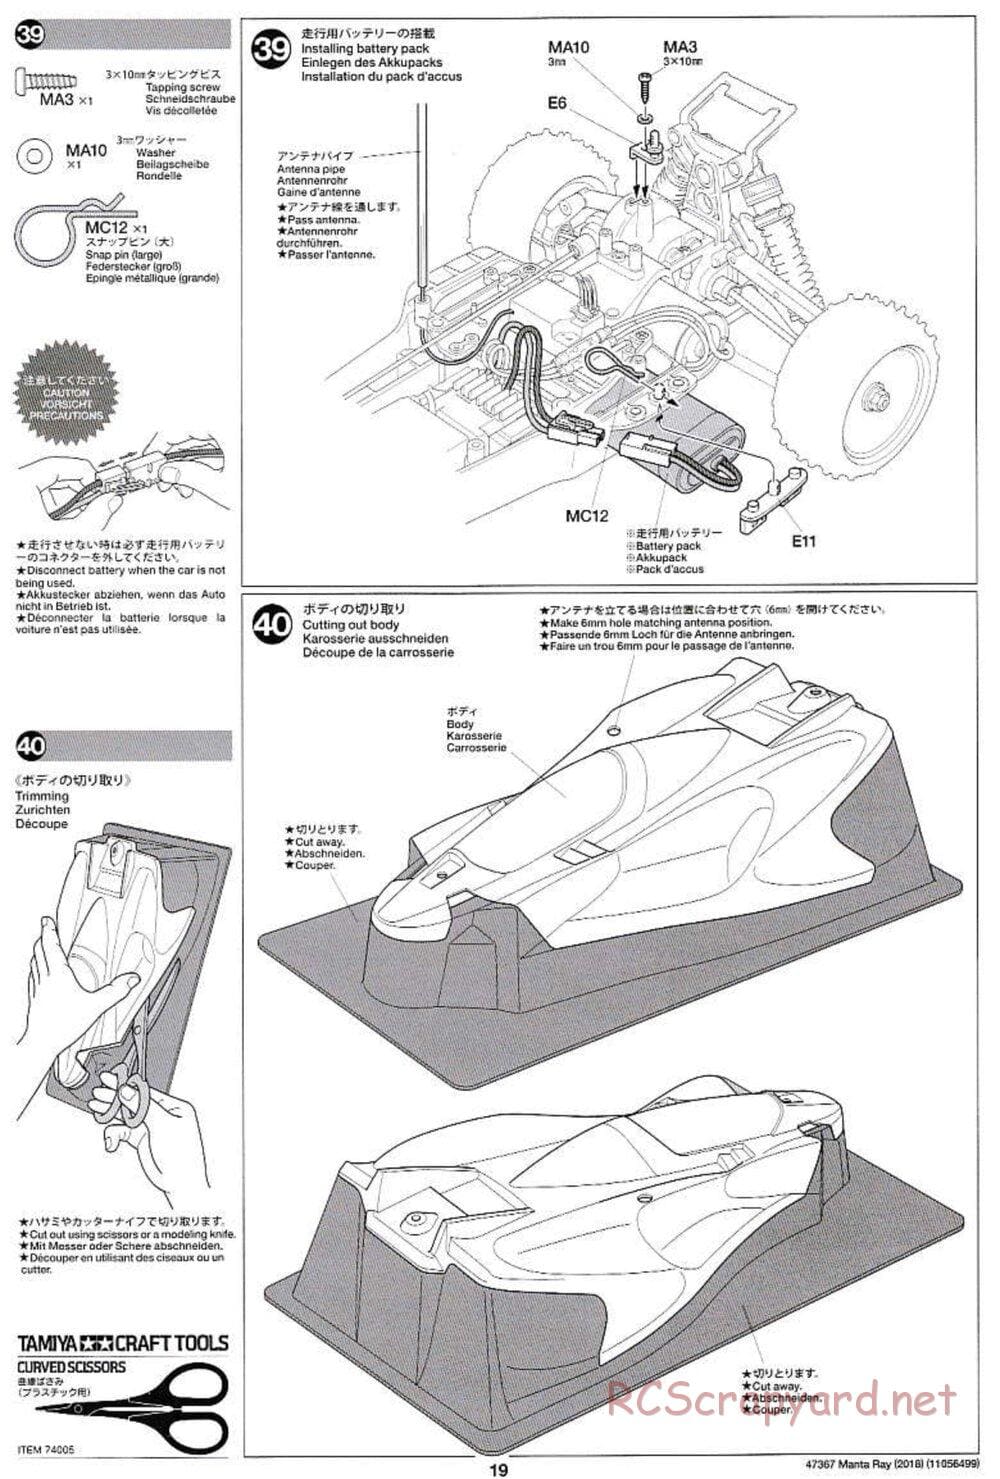 Tamiya - Manta Ray 2018 - DF-01 Chassis - Manual - Page 19